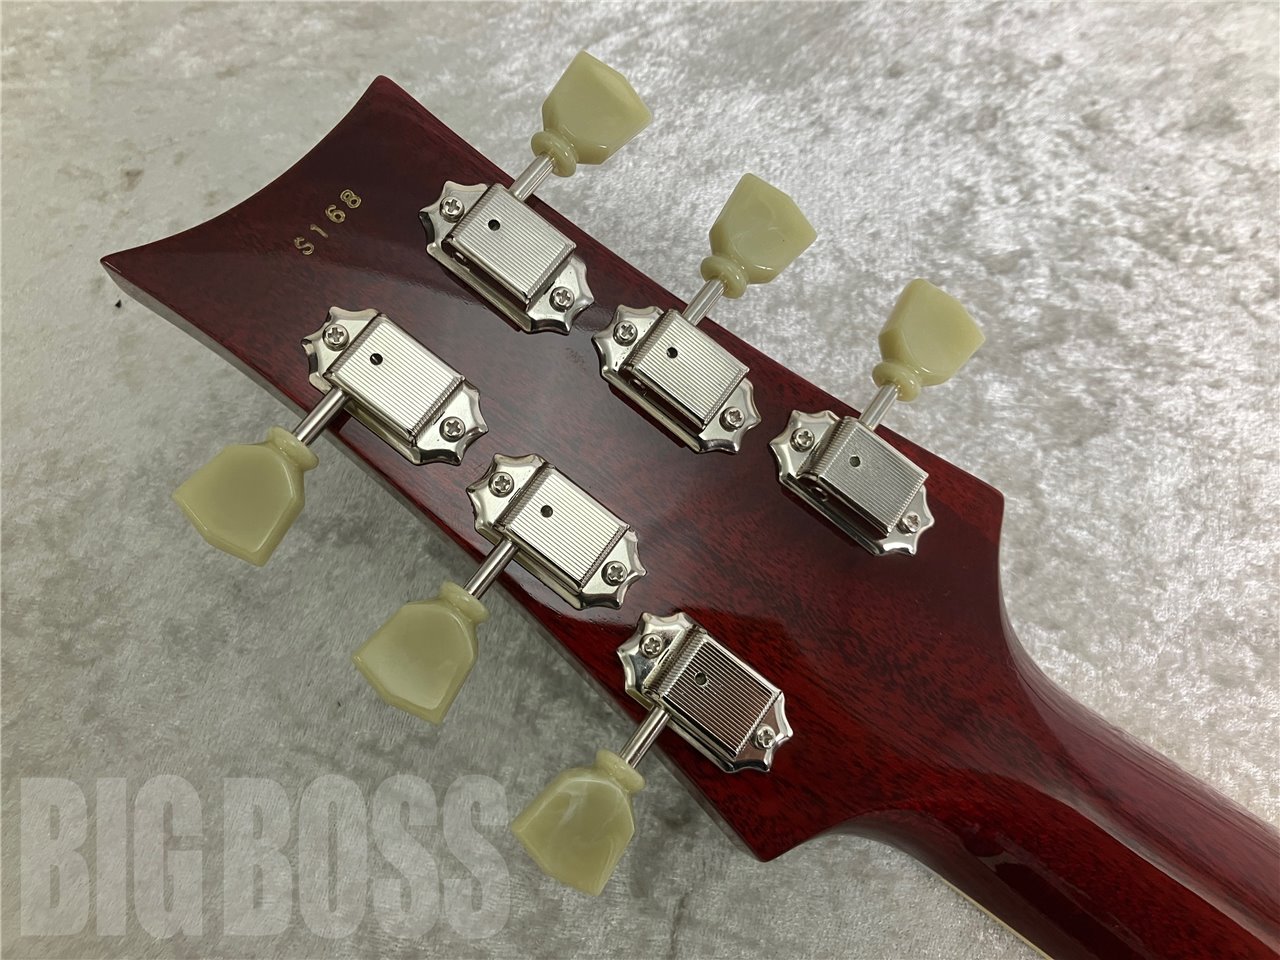 【即納可能】Three Dots Guitars (スリードッツギターズ) SH-Model (Cherry) お茶の水駅前店(東京)